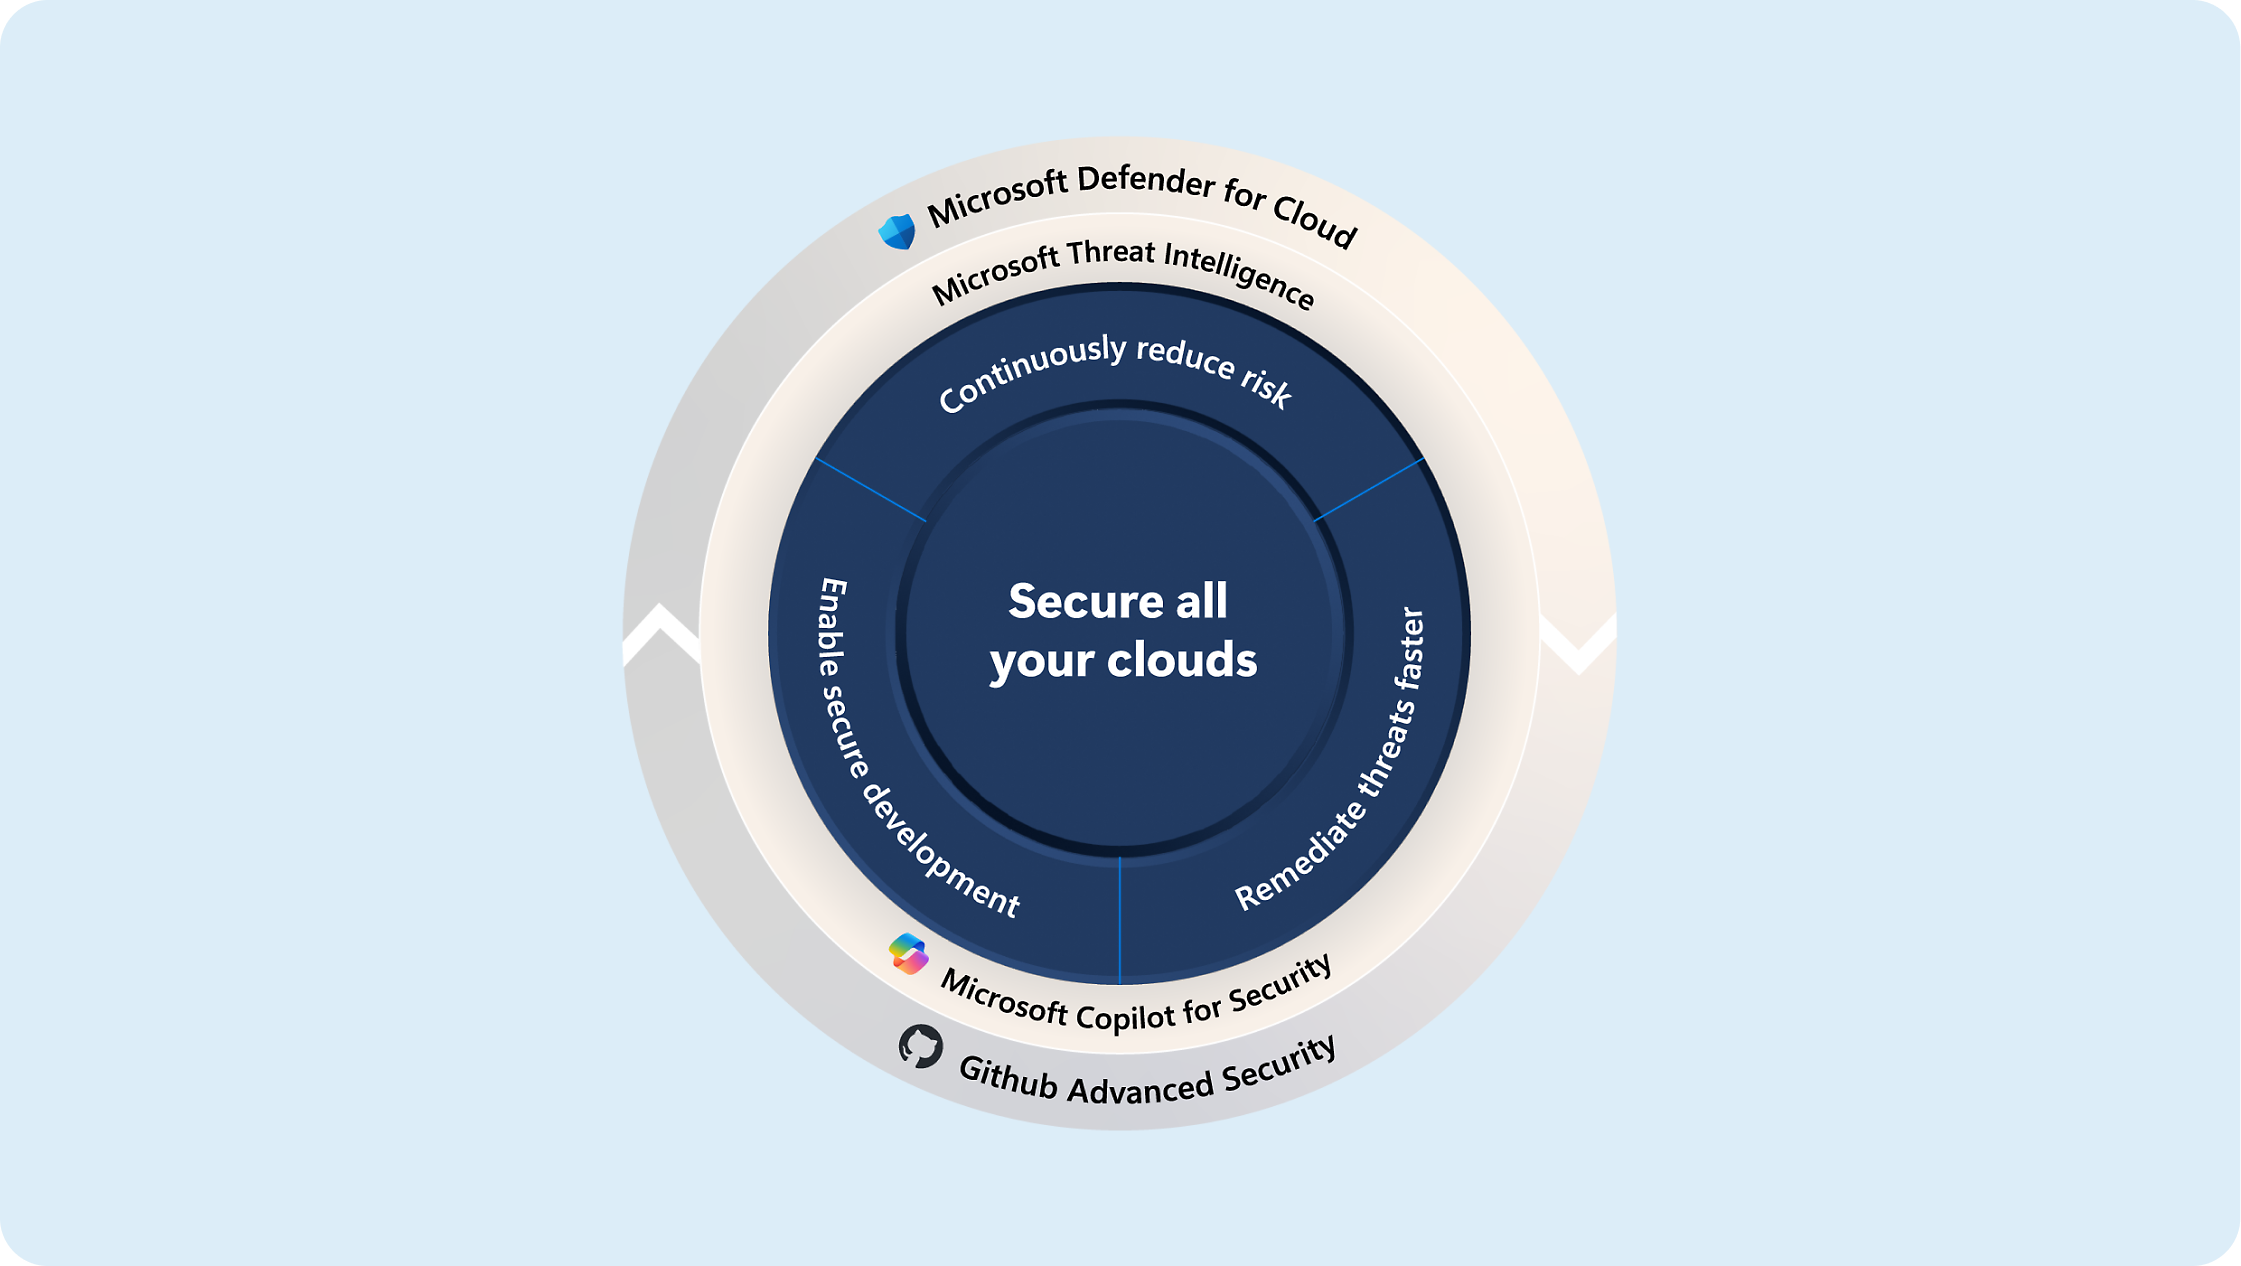 Microsoft Defender、脅威インテリジェンス、Copilot for Security を使用してクラウドをセキュリティで保護する戦略を示す図